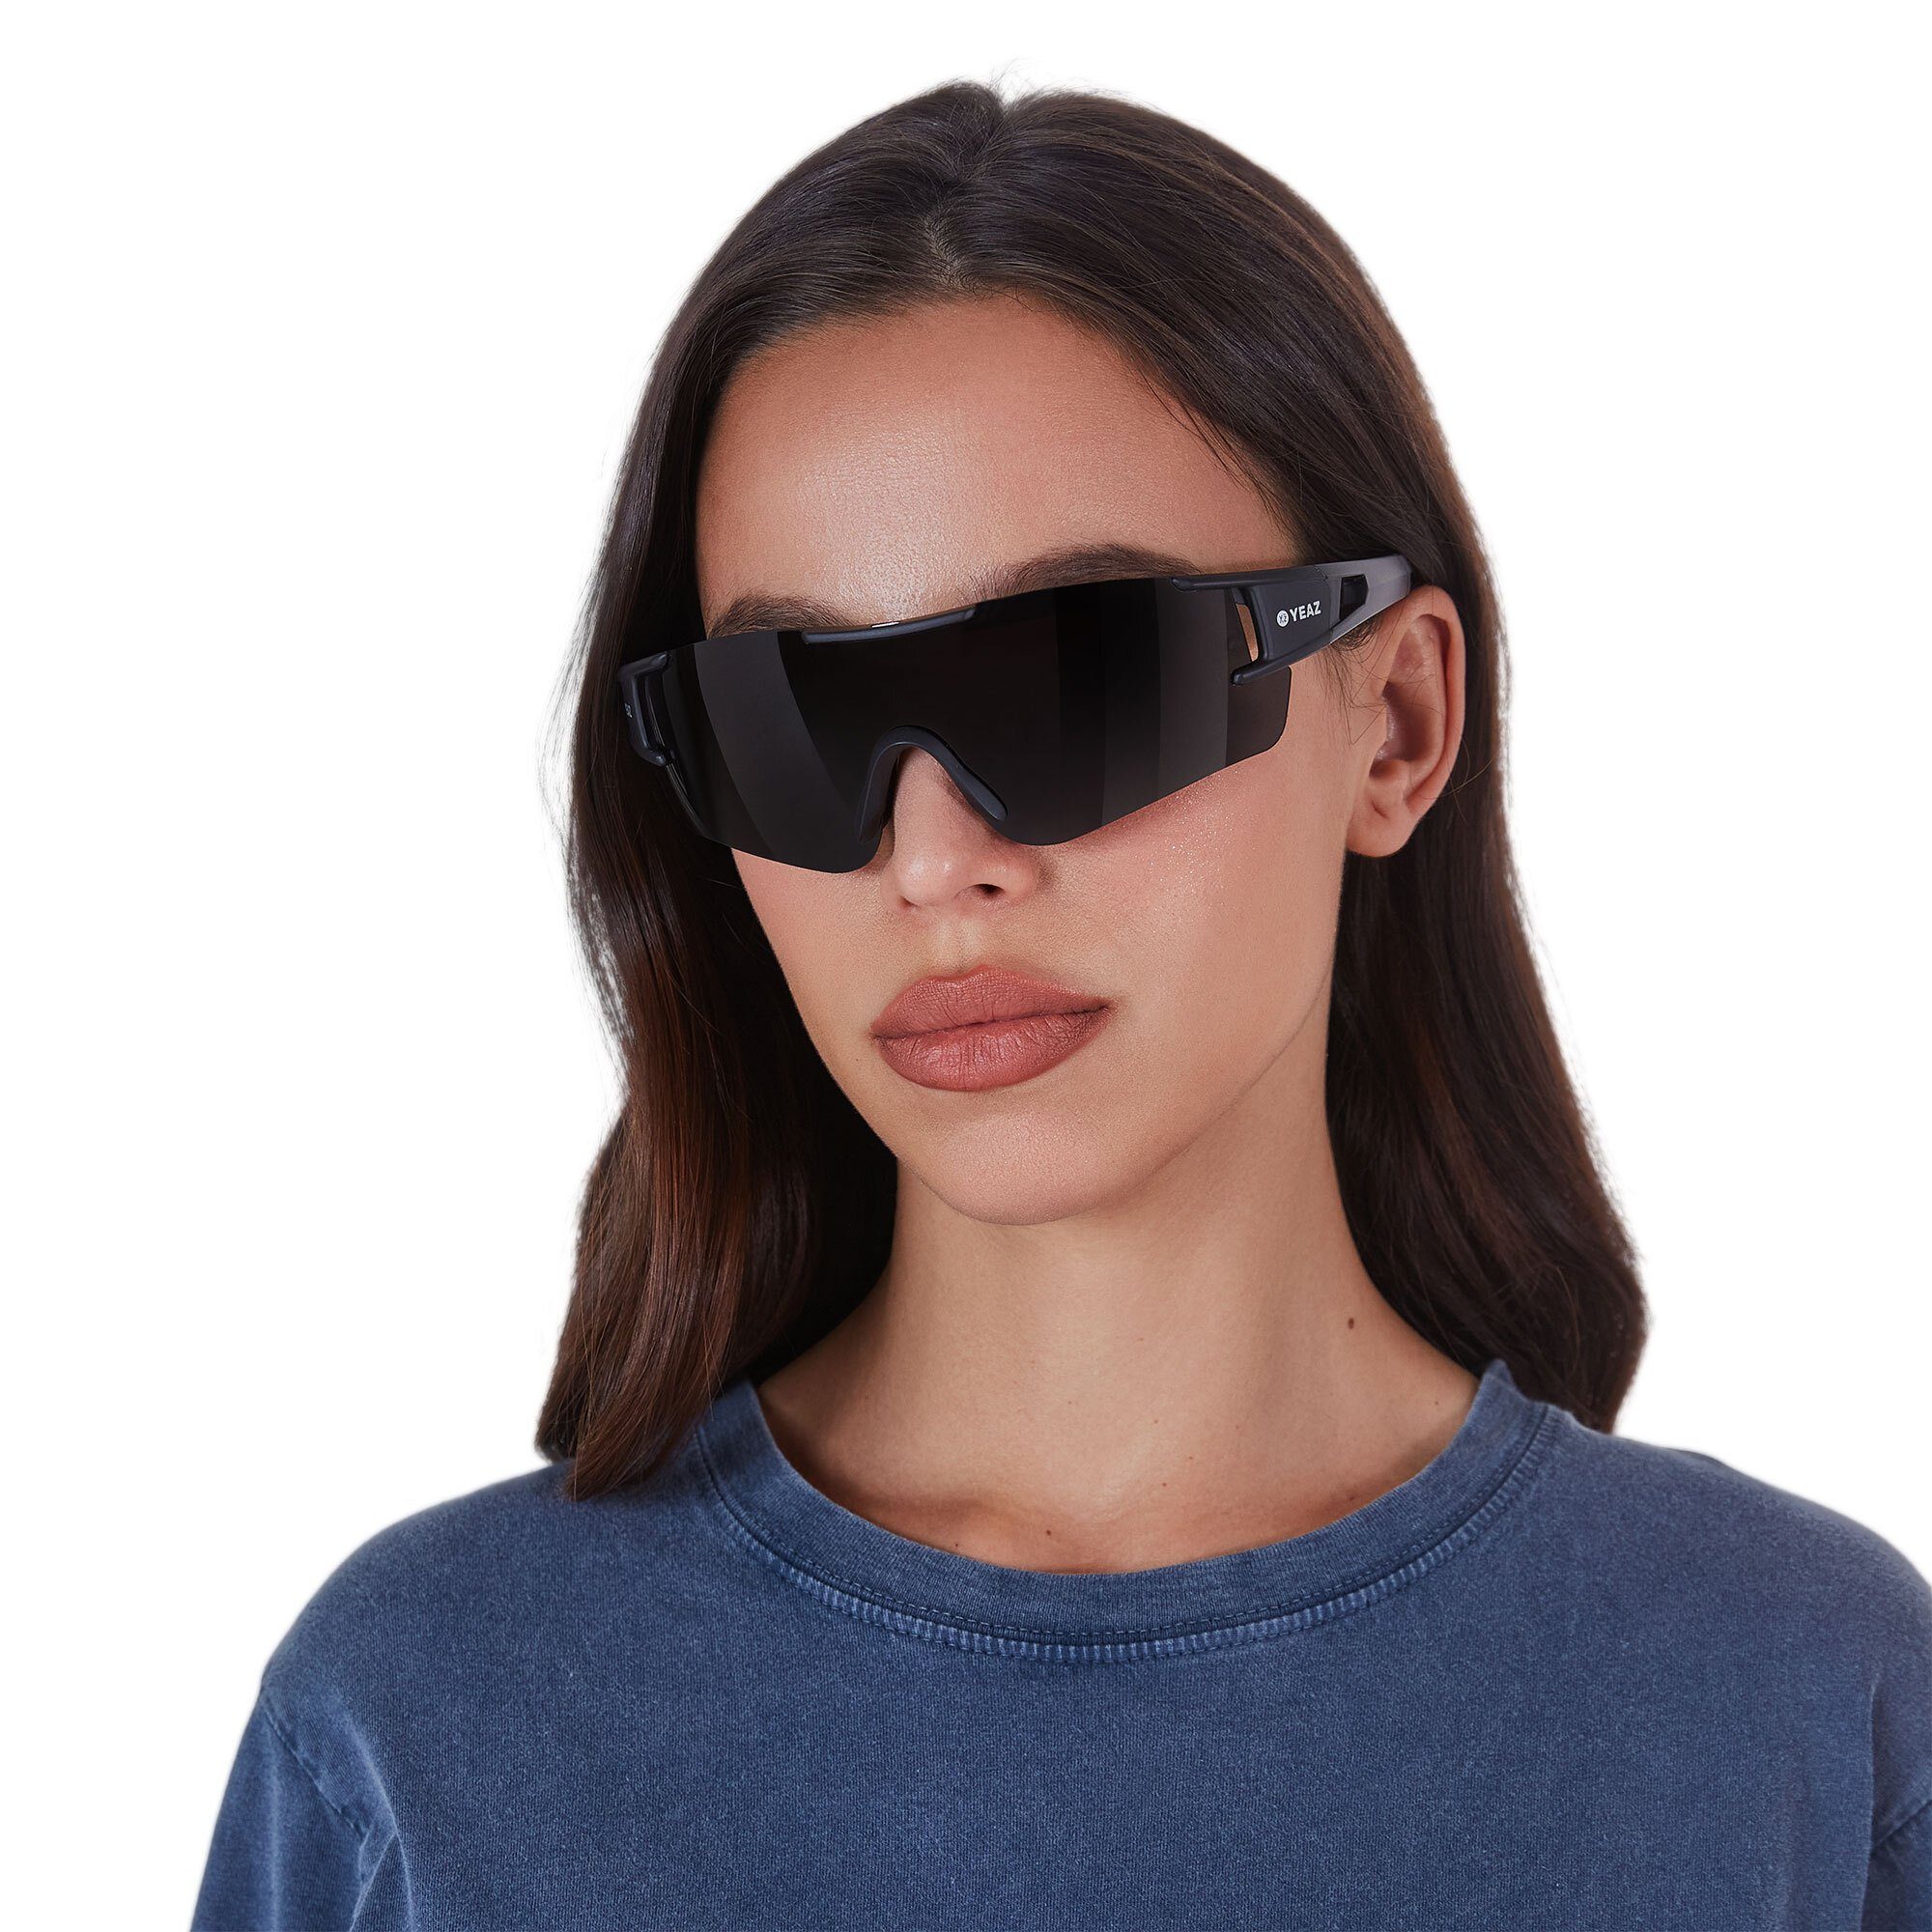 bei Sicht YEAZ Guter SUNBLOW Sportbrille Schutz black/grey, sport-sonnenbrille optimierter